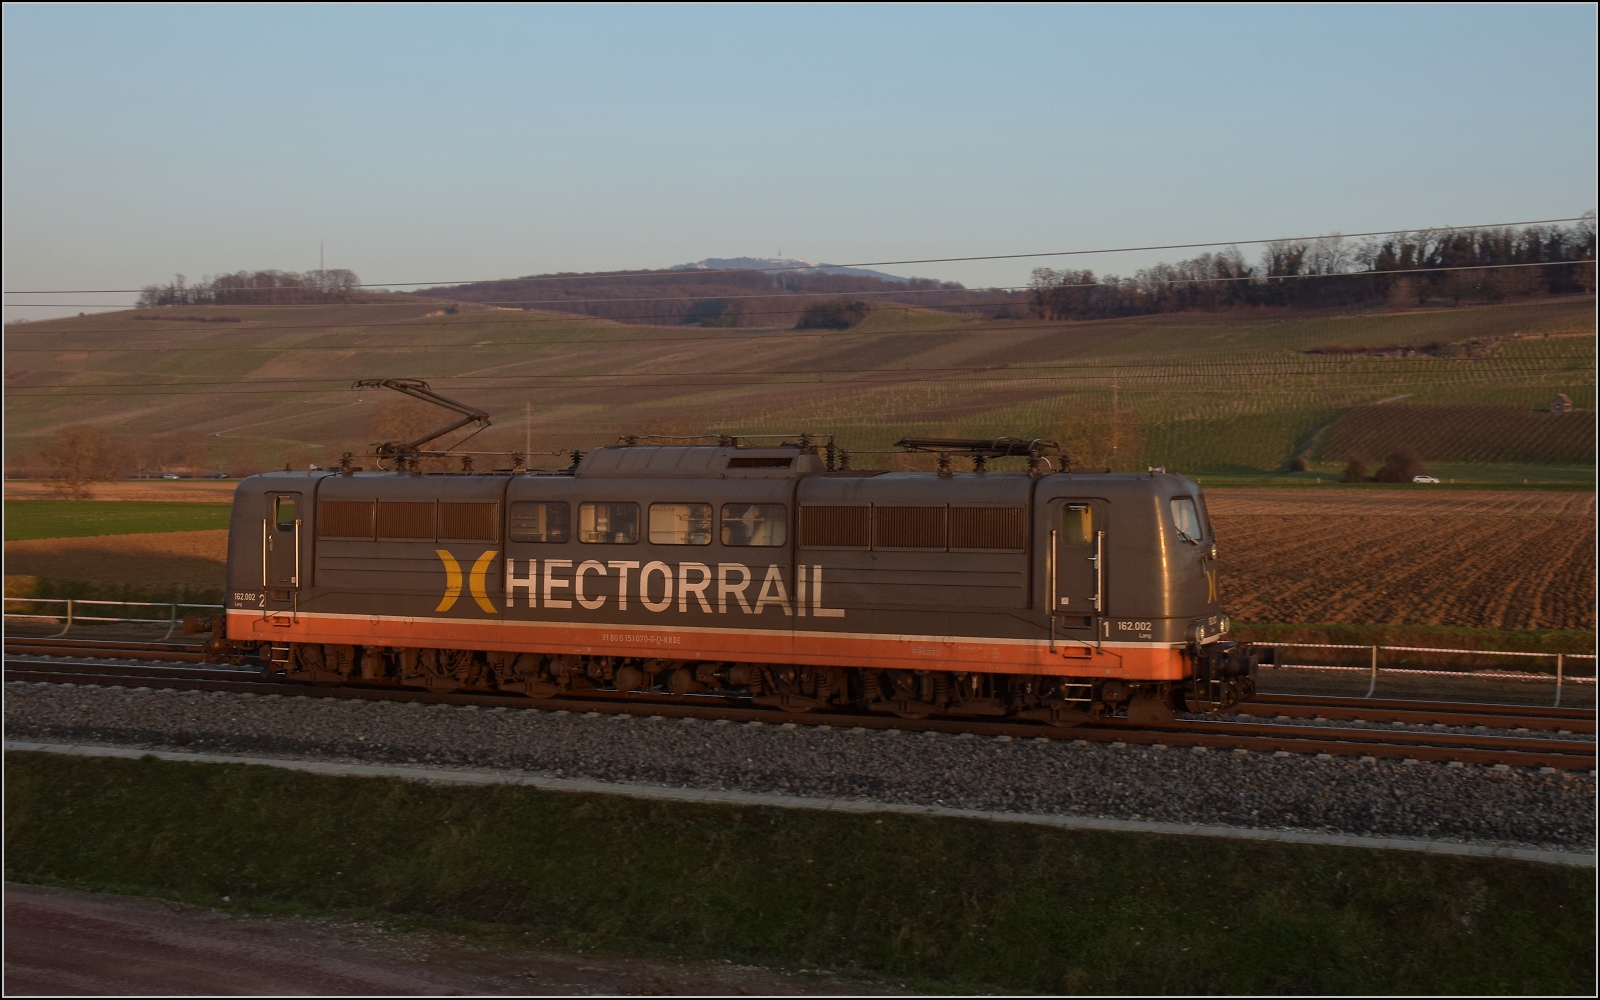 Abend im Markgrfler Land.

151 070 der Hectorrail bei Schliengen. Februar 2023.